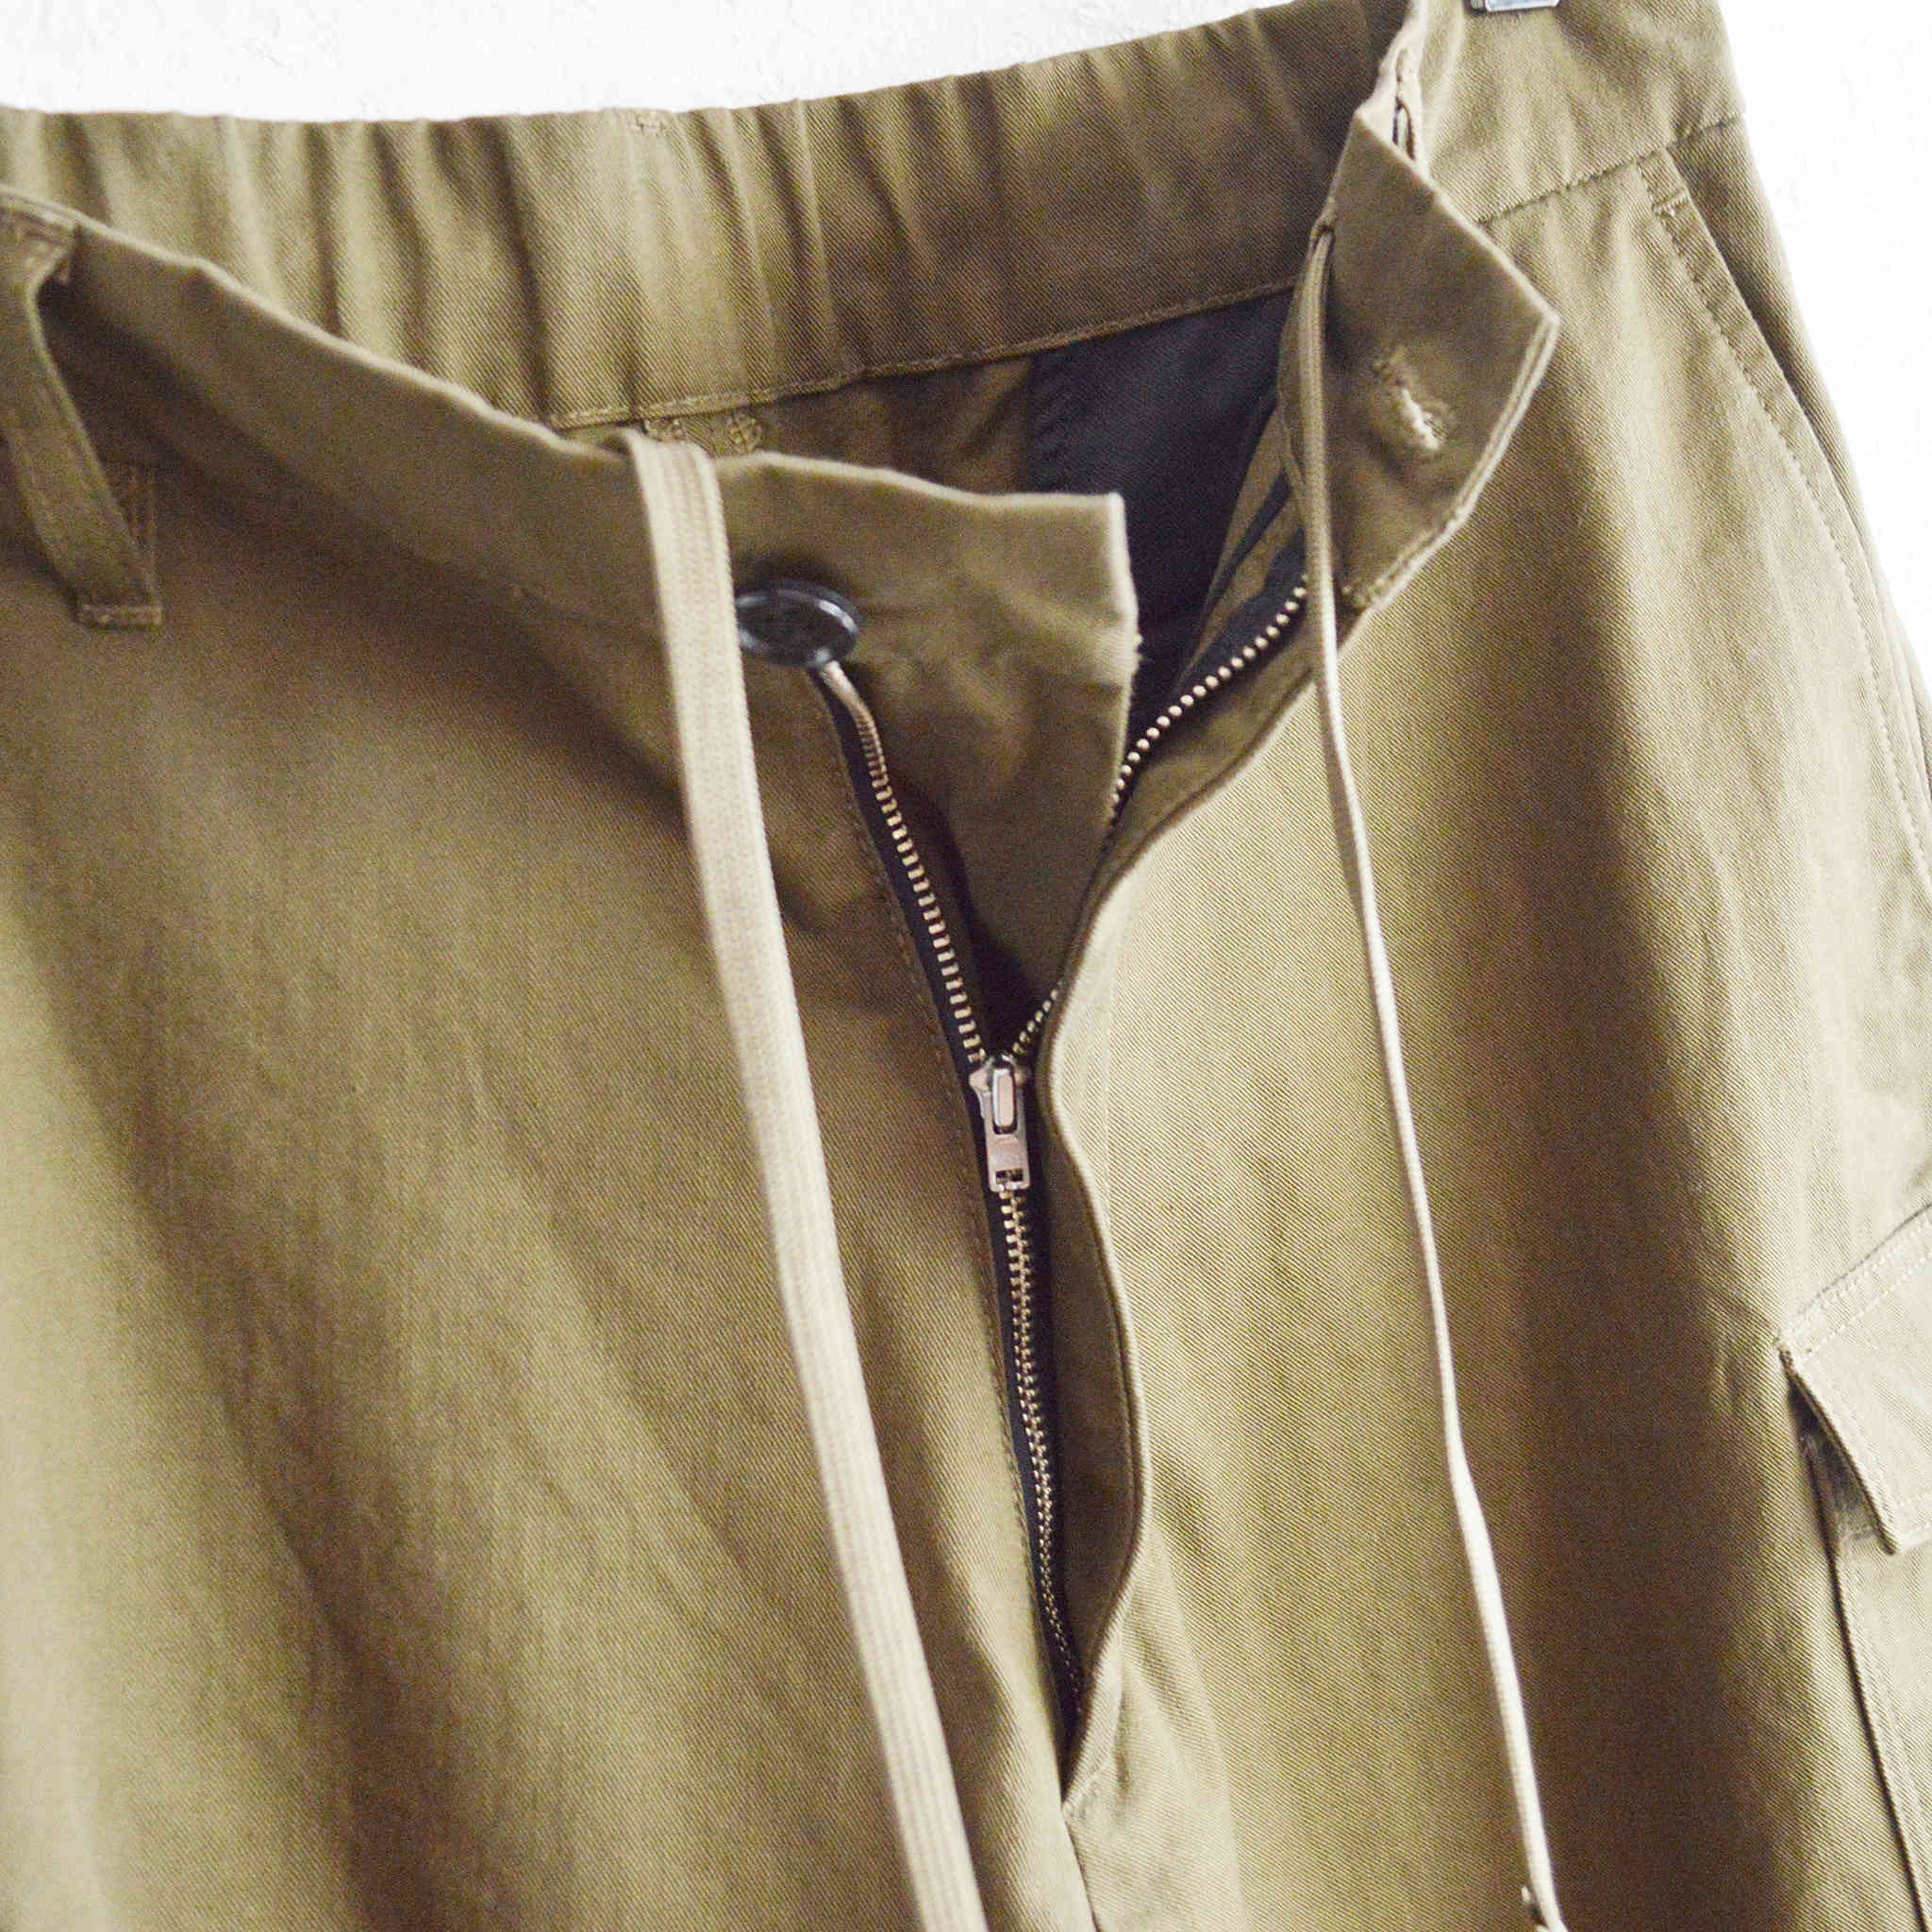 LAMOND ラモンド / VINTAGE CHINO CLOTH CARGO PANTS ビンテージチノクロスカーゴパンツ (MOSS GREEN モスグリーン)